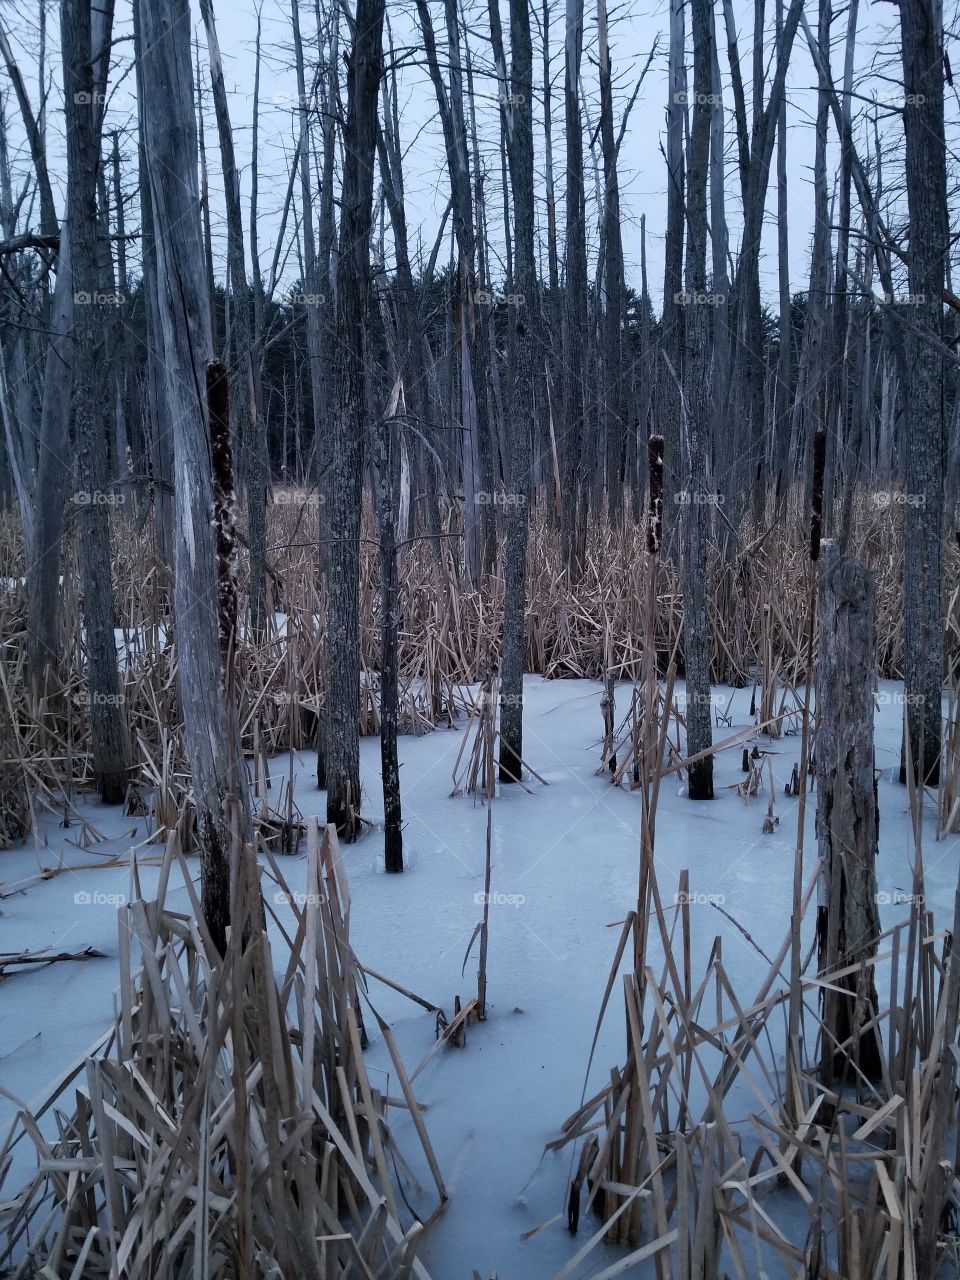 Frozen swamp forest